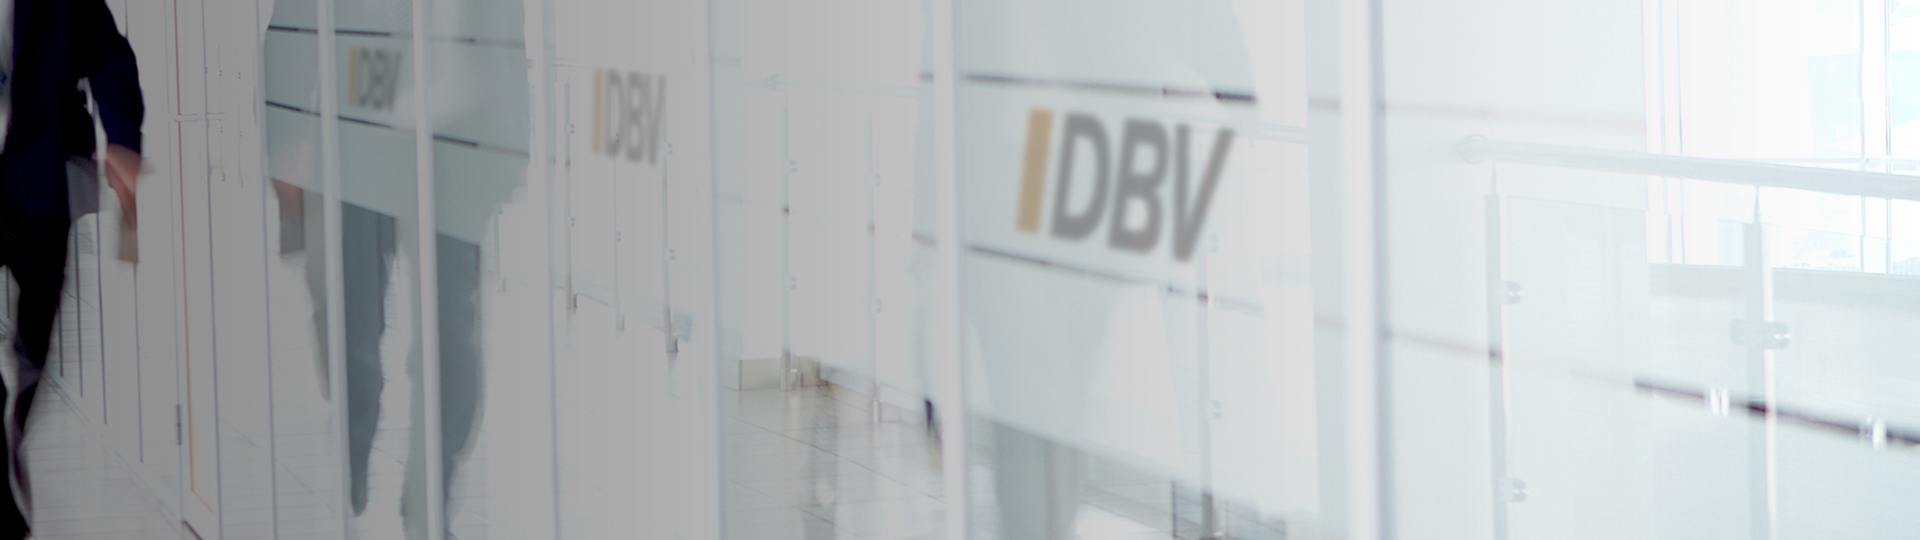 Wichtige Versicherungen | DBV Rostock Hoppe & Waskewitz oHG